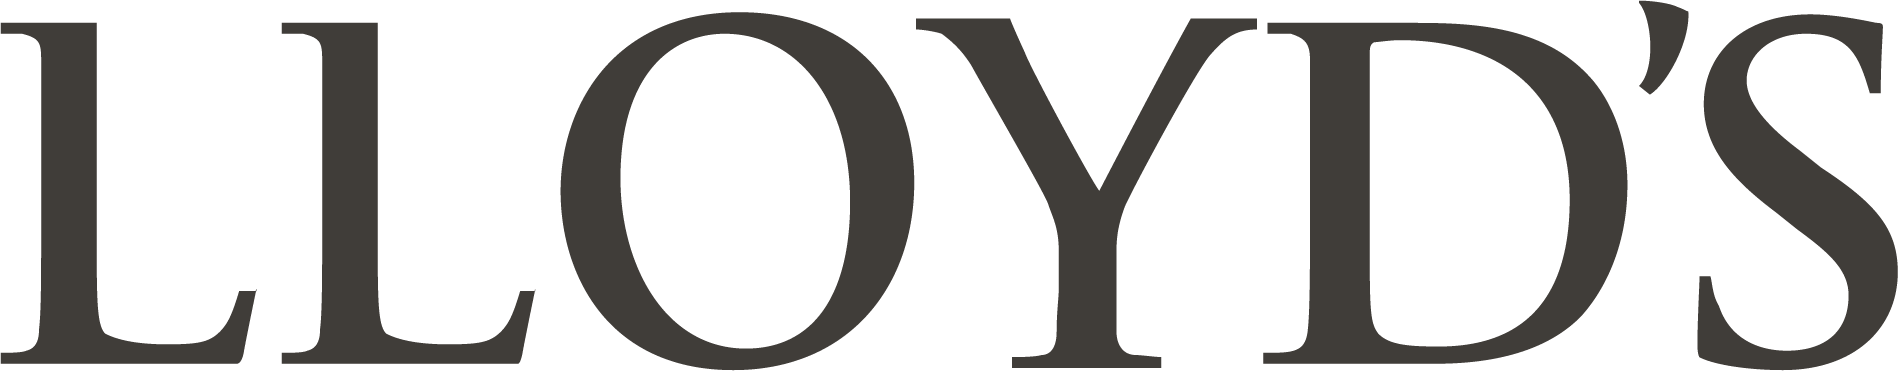 Lloyd's Logo